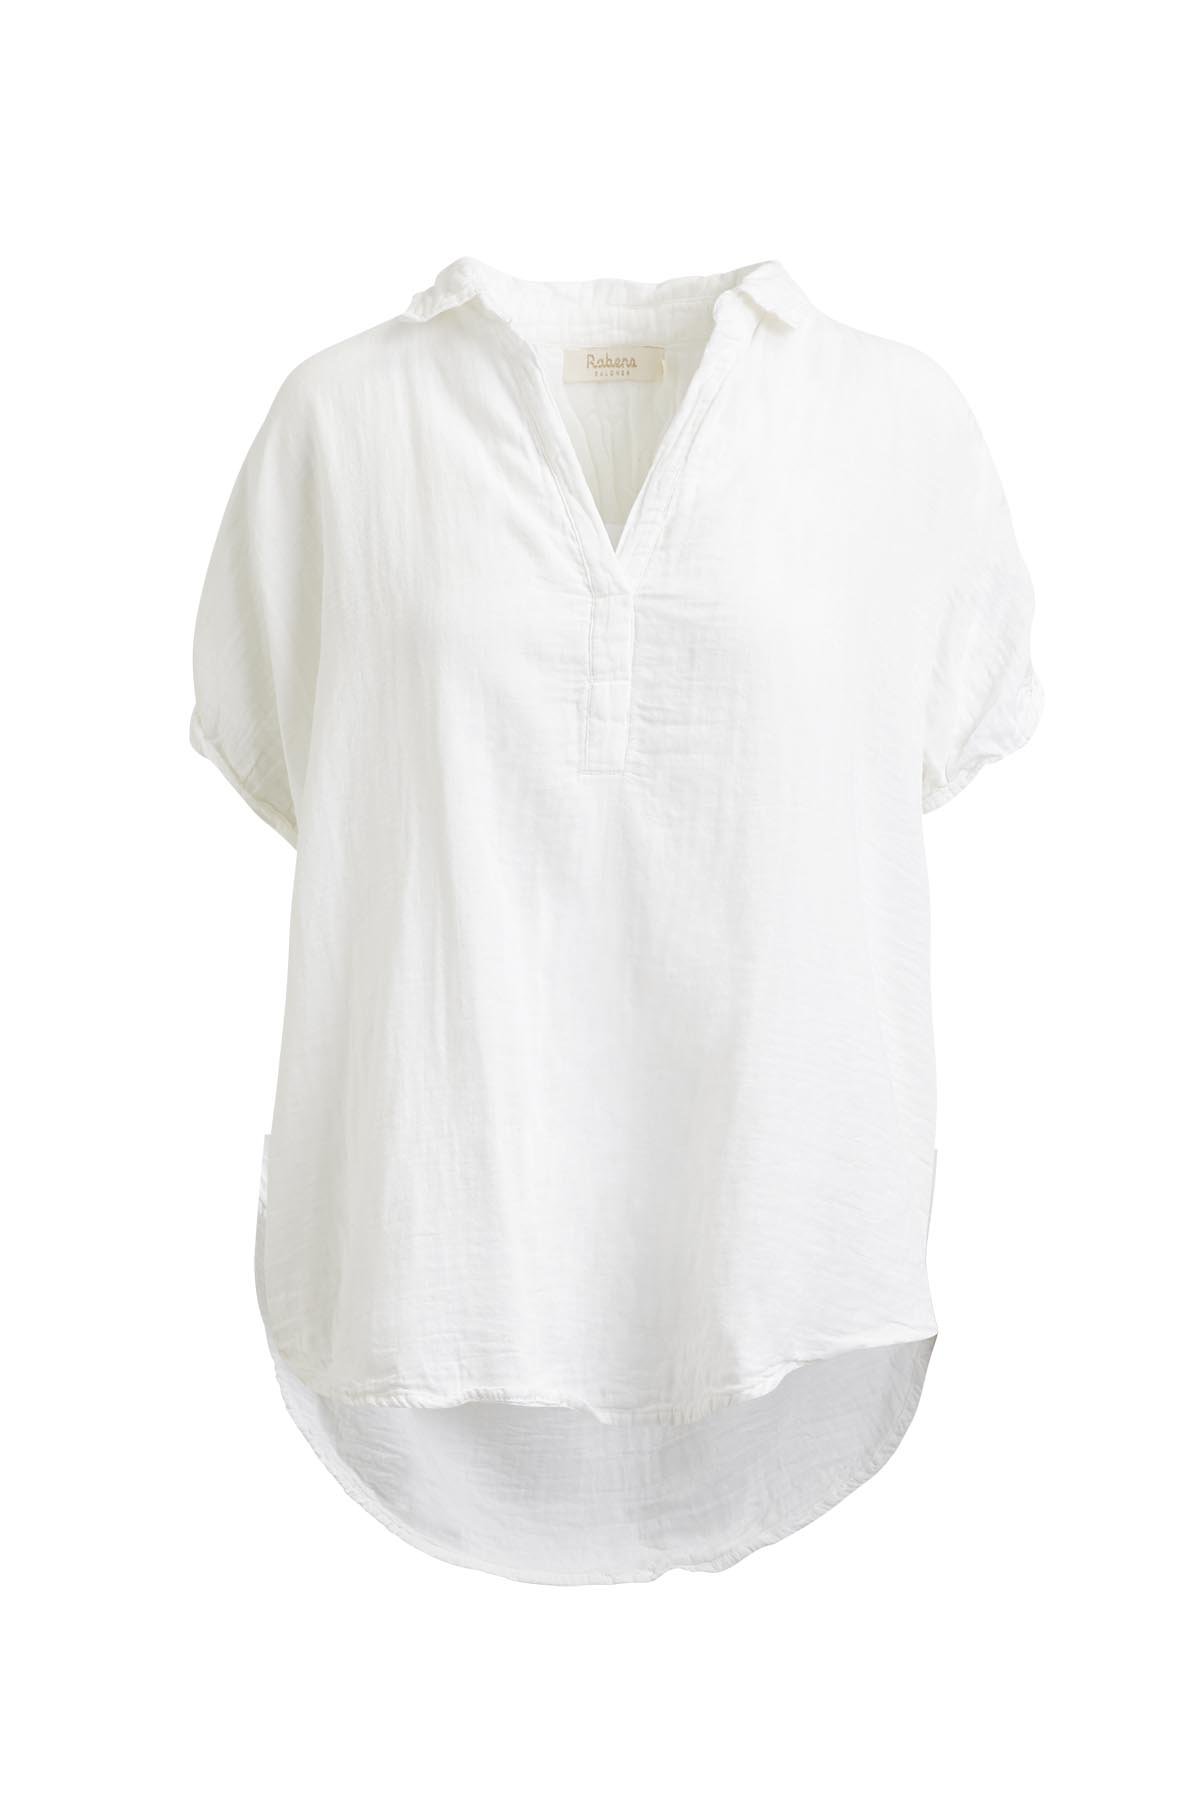 Margareta Concept Store | Abeni Cotton Shirt